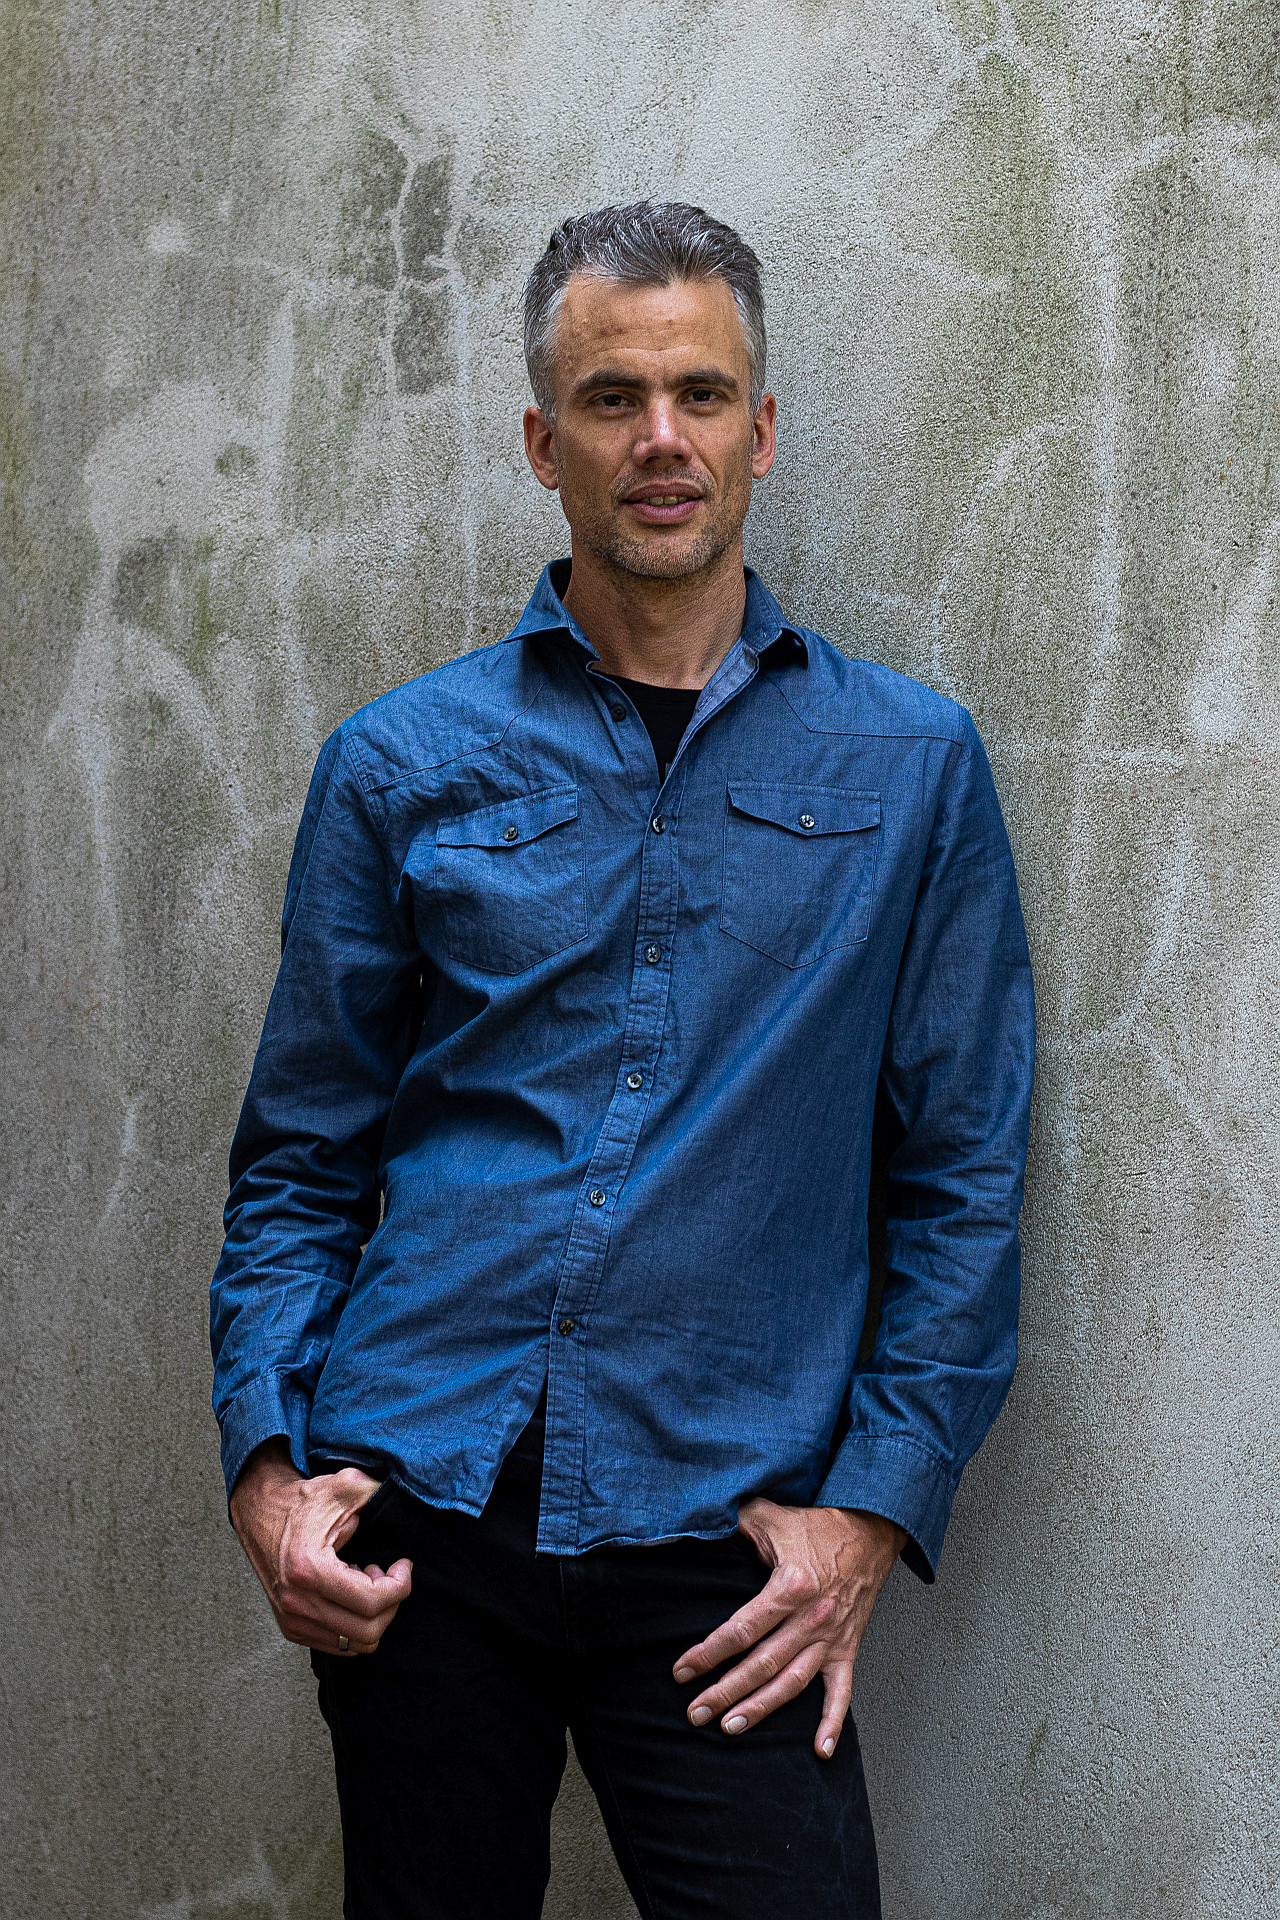 Bassist Maarten van Leuw